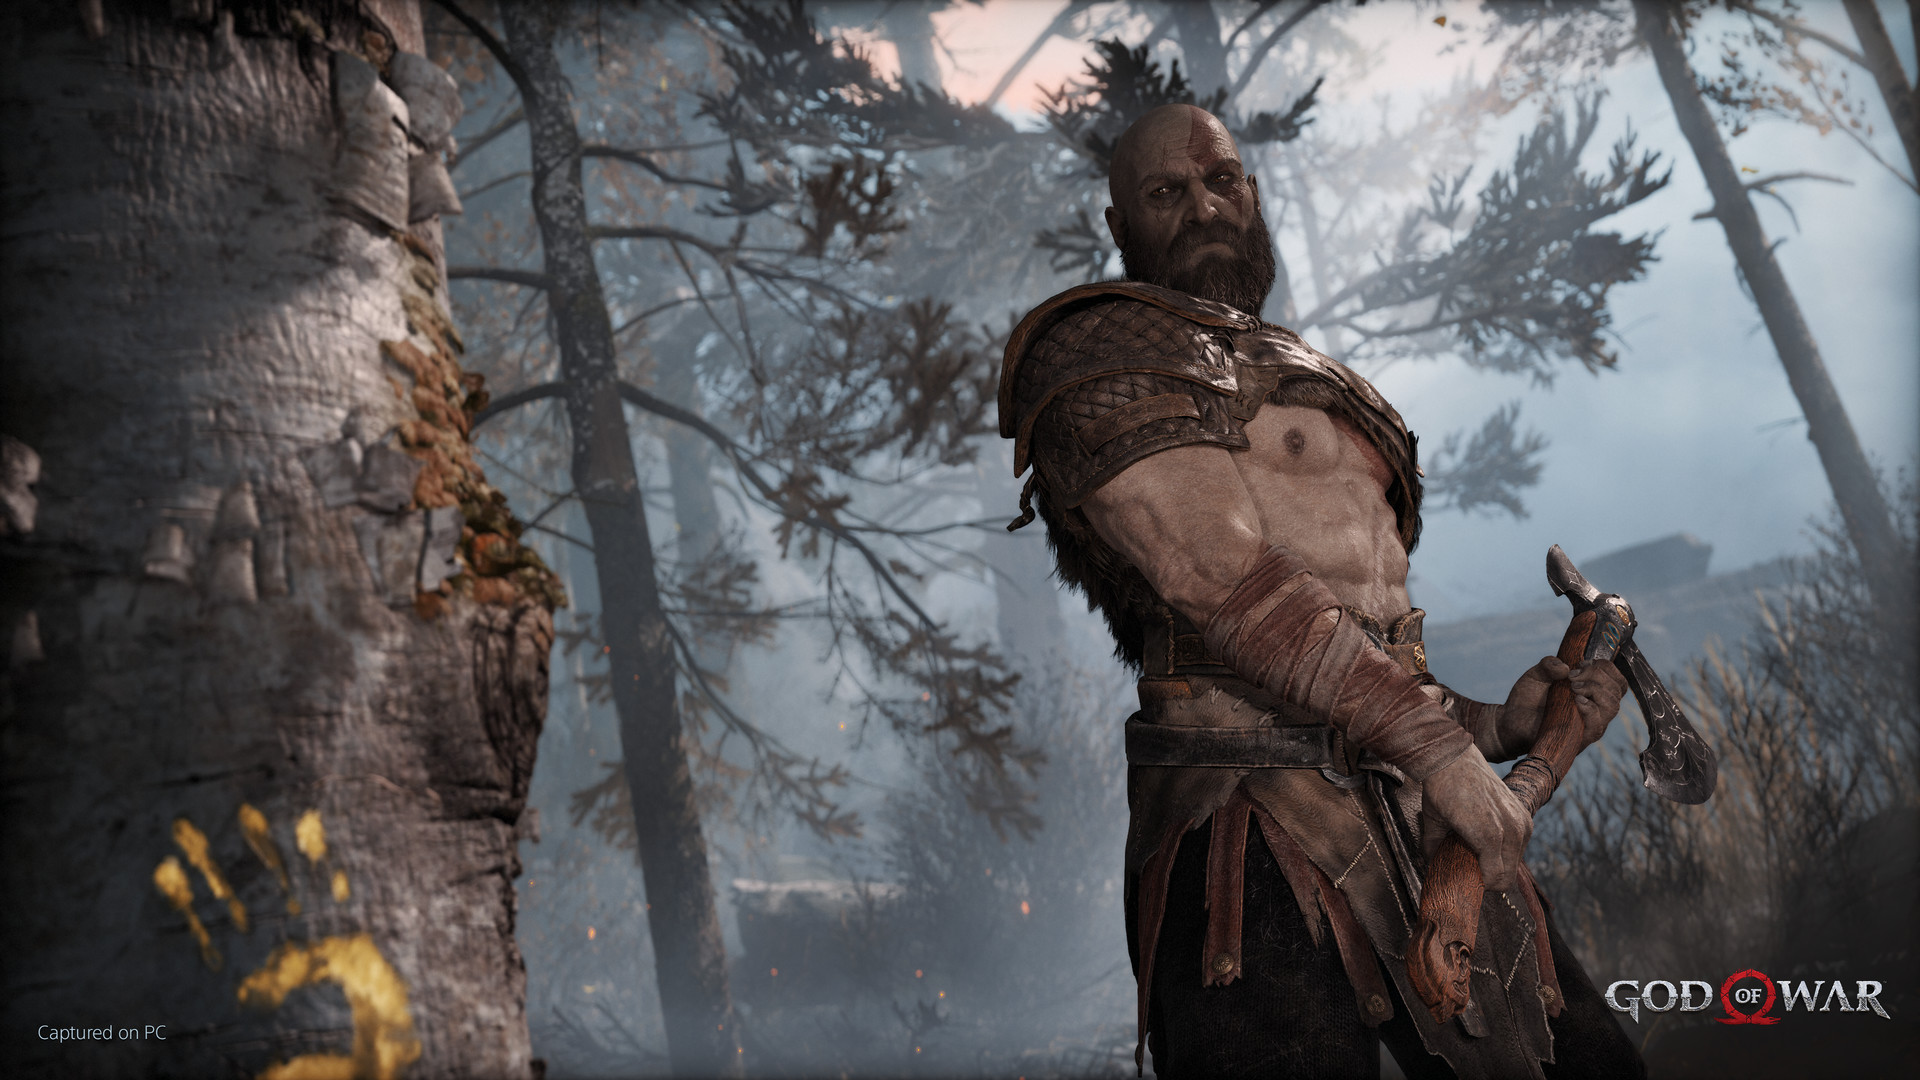 Το God of War έρχεται επίσημα στα PC μέσω Steam και Epic Games Store